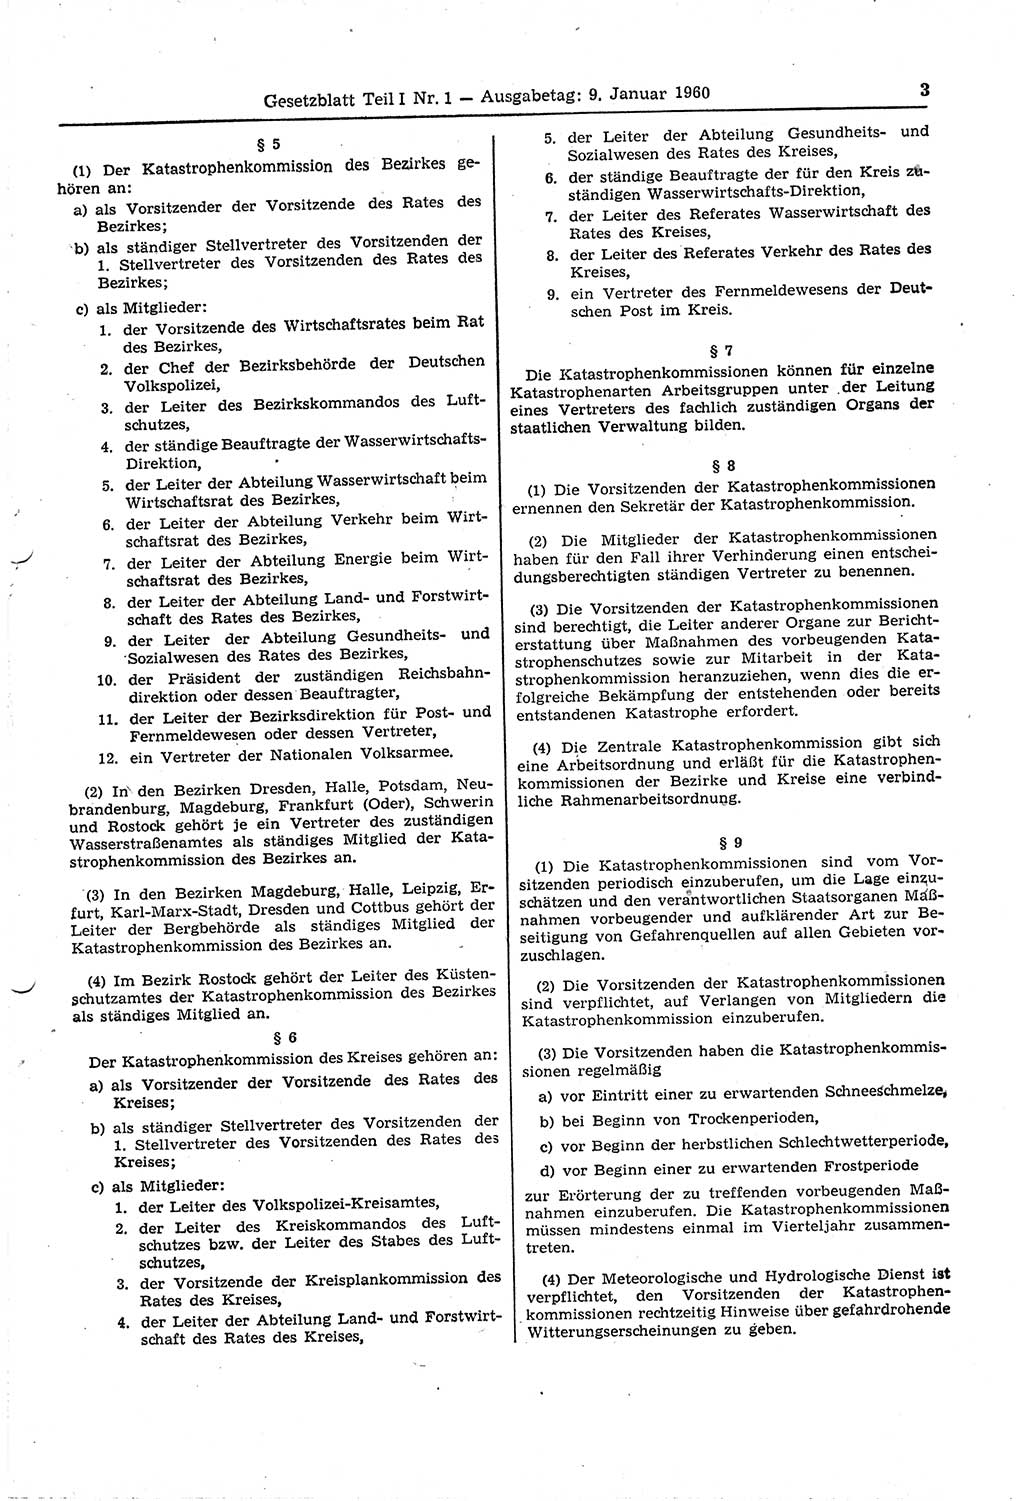 Gesetzblatt (GBl.) der Deutschen Demokratischen Republik (DDR) Teil Ⅰ 1960, Seite 3 (GBl. DDR Ⅰ 1960, S. 3)